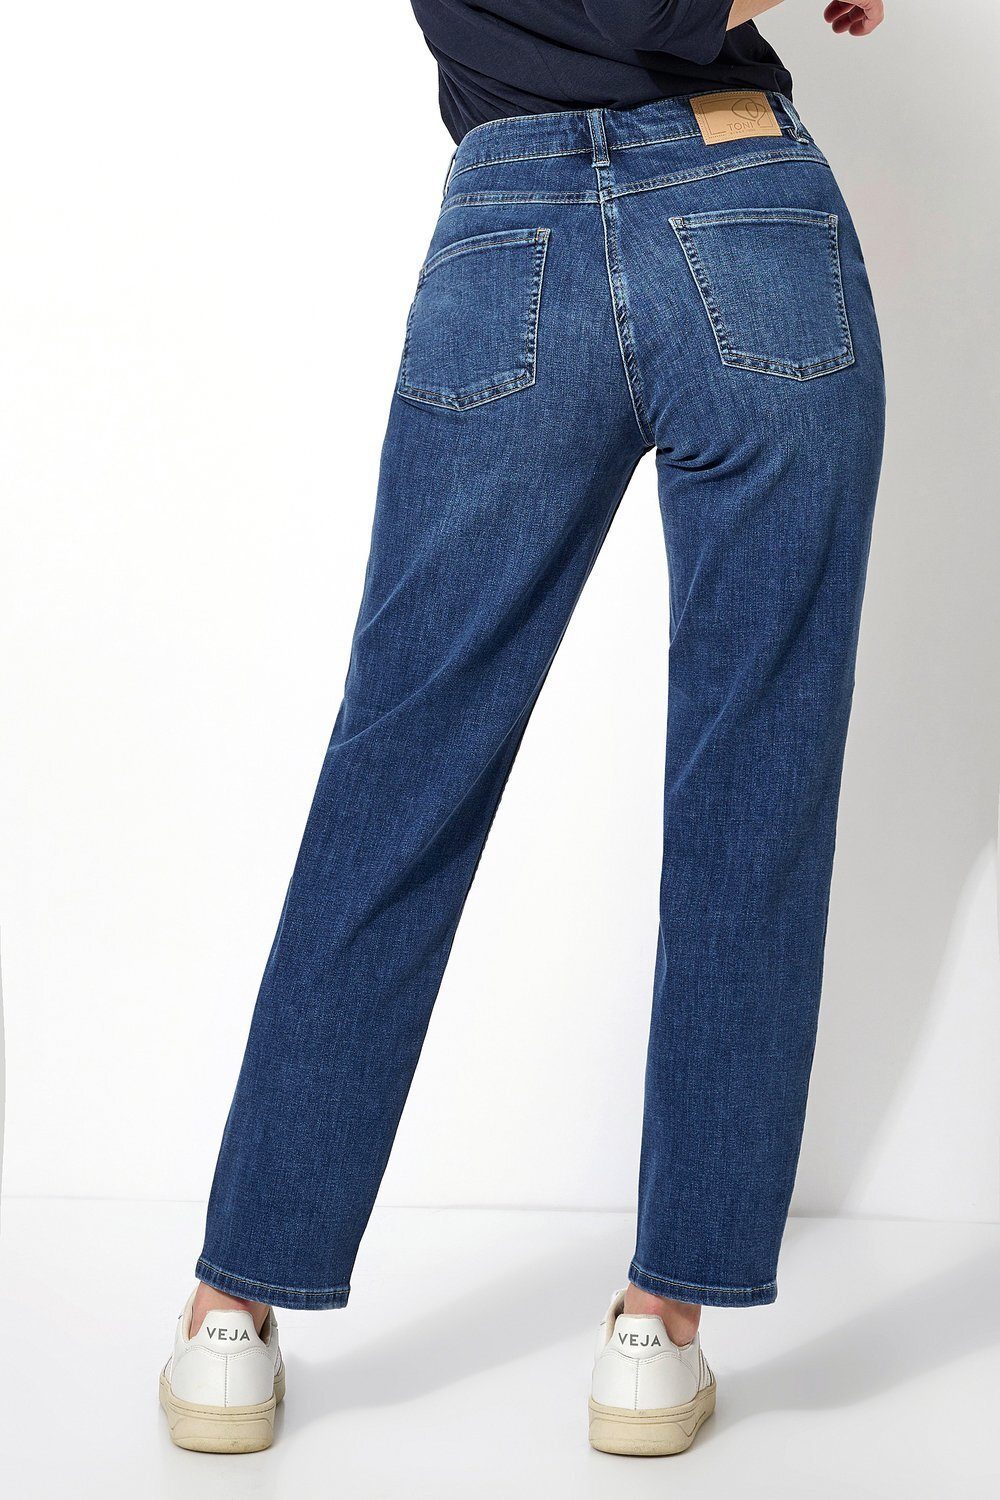 - entspannter mit TONI 554 Oberschenkelweite Comfort-fit-Jeans Happy mittelblau